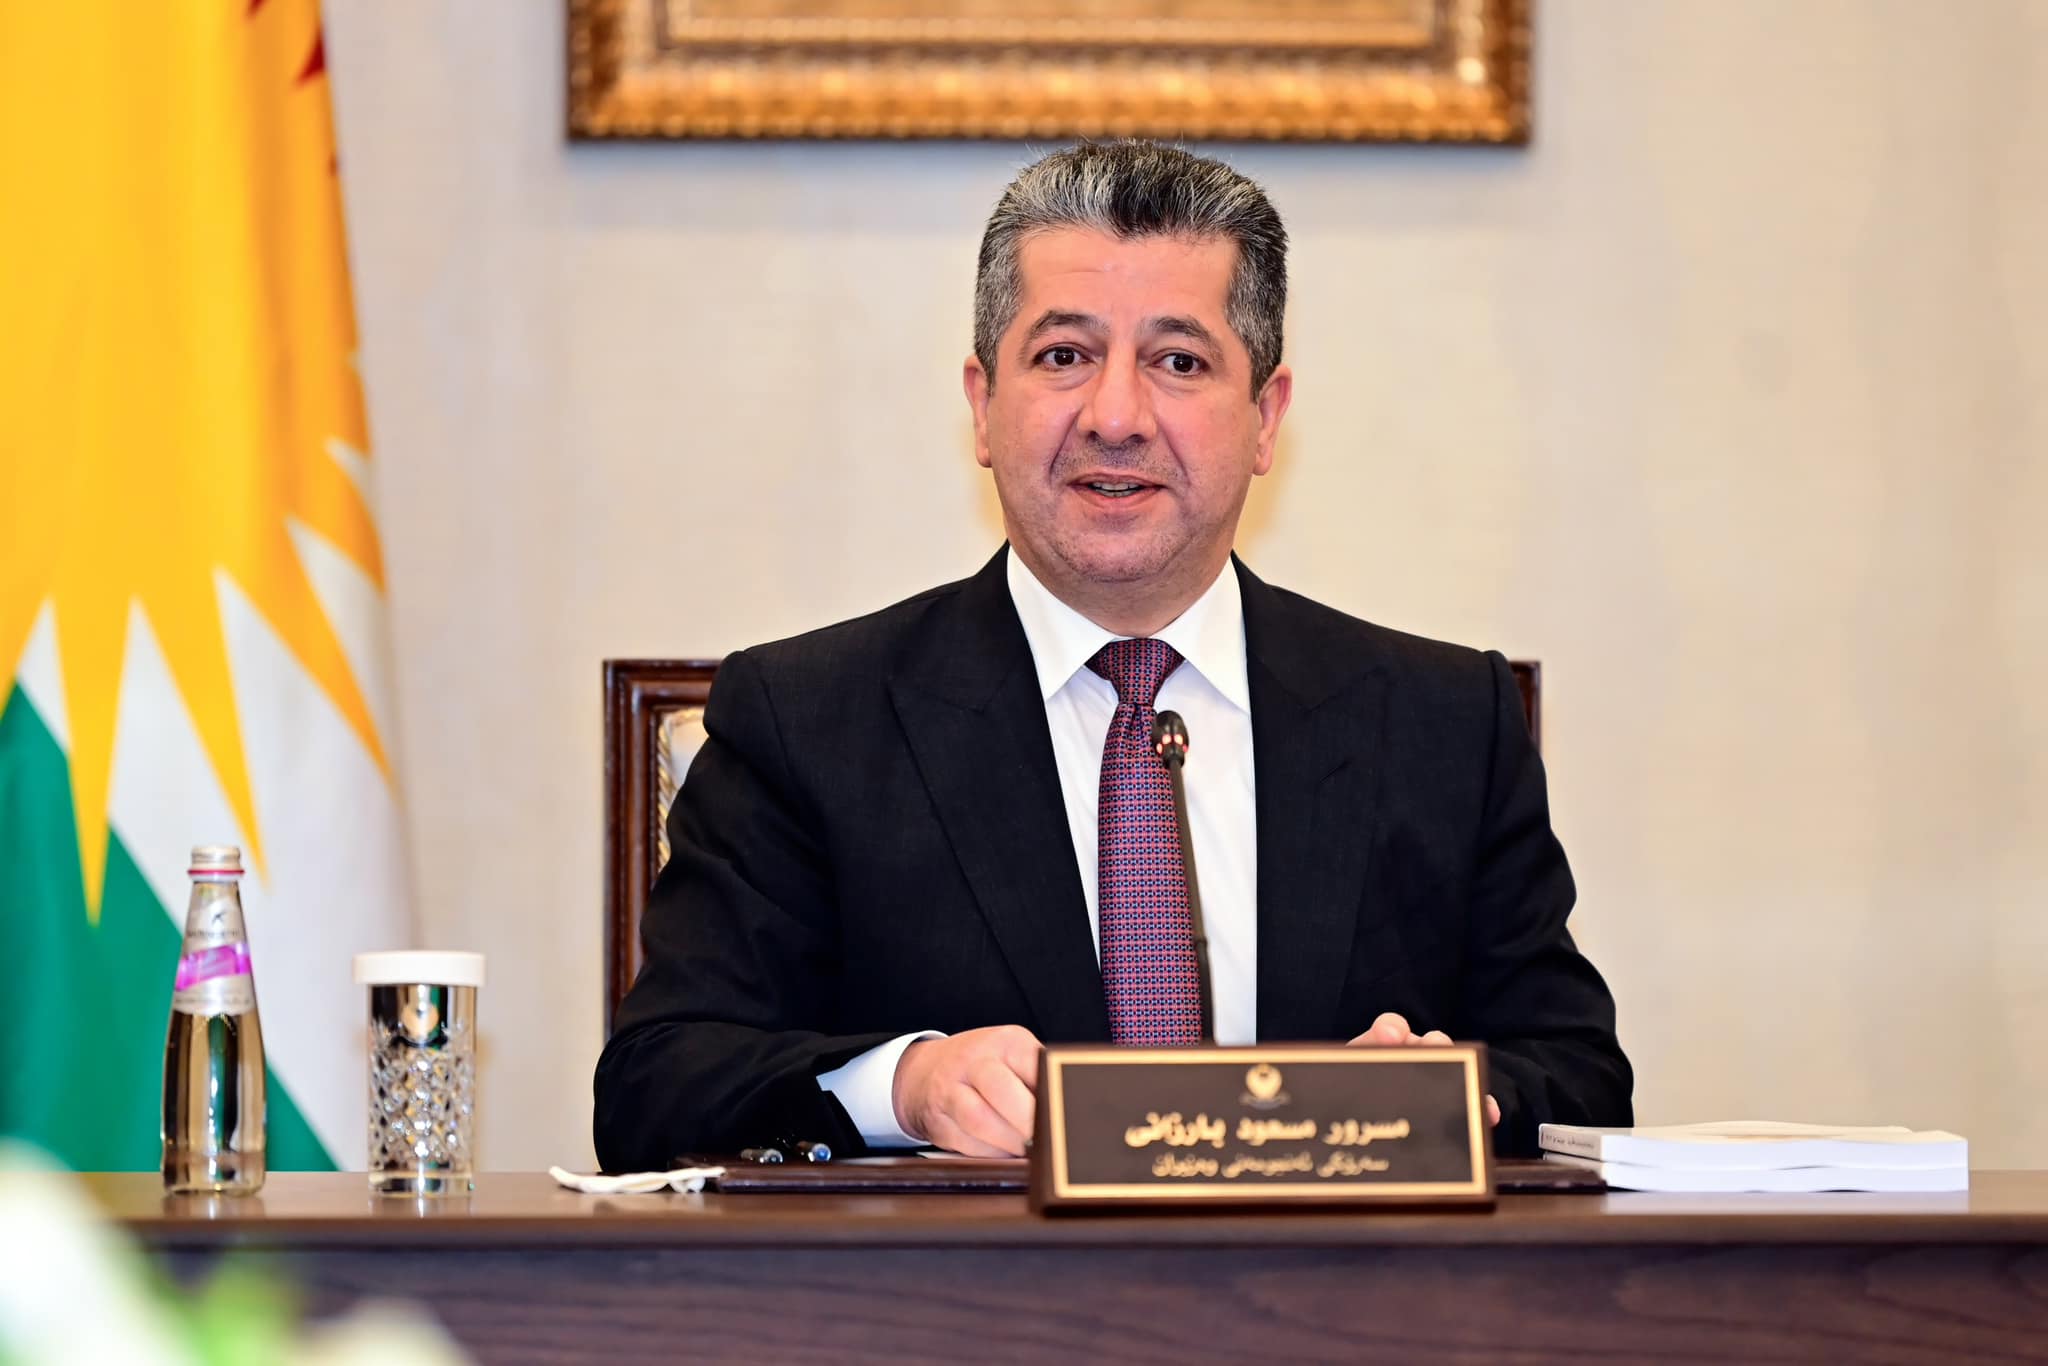 Başbakan Mesrur Barzani hükümetlerine dayatılanları ve çalışmalarınıda dönük engelleri anlattı